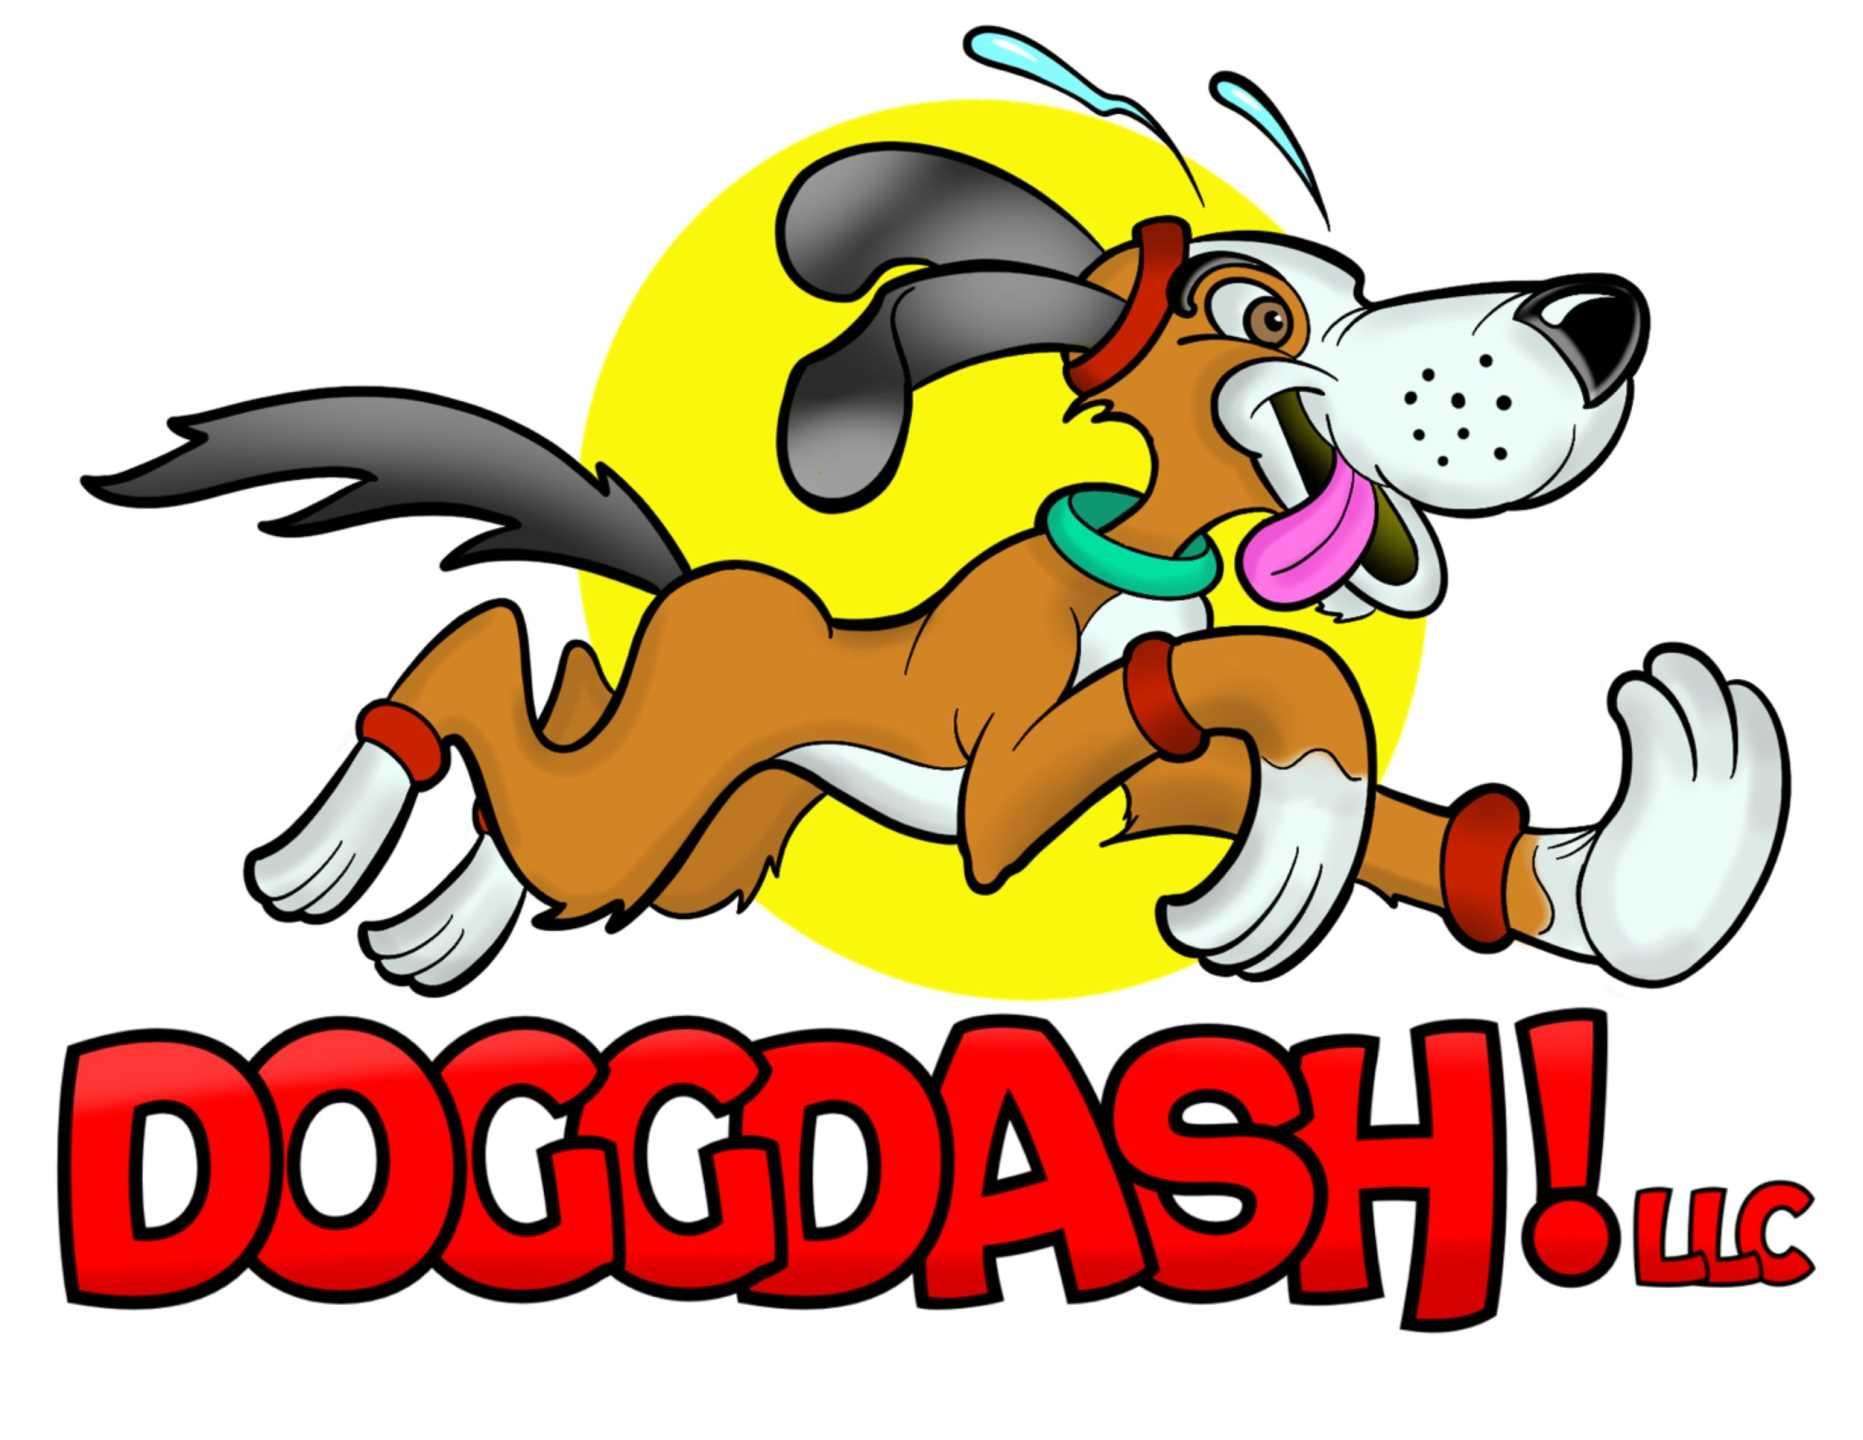 DoggDash! Logo